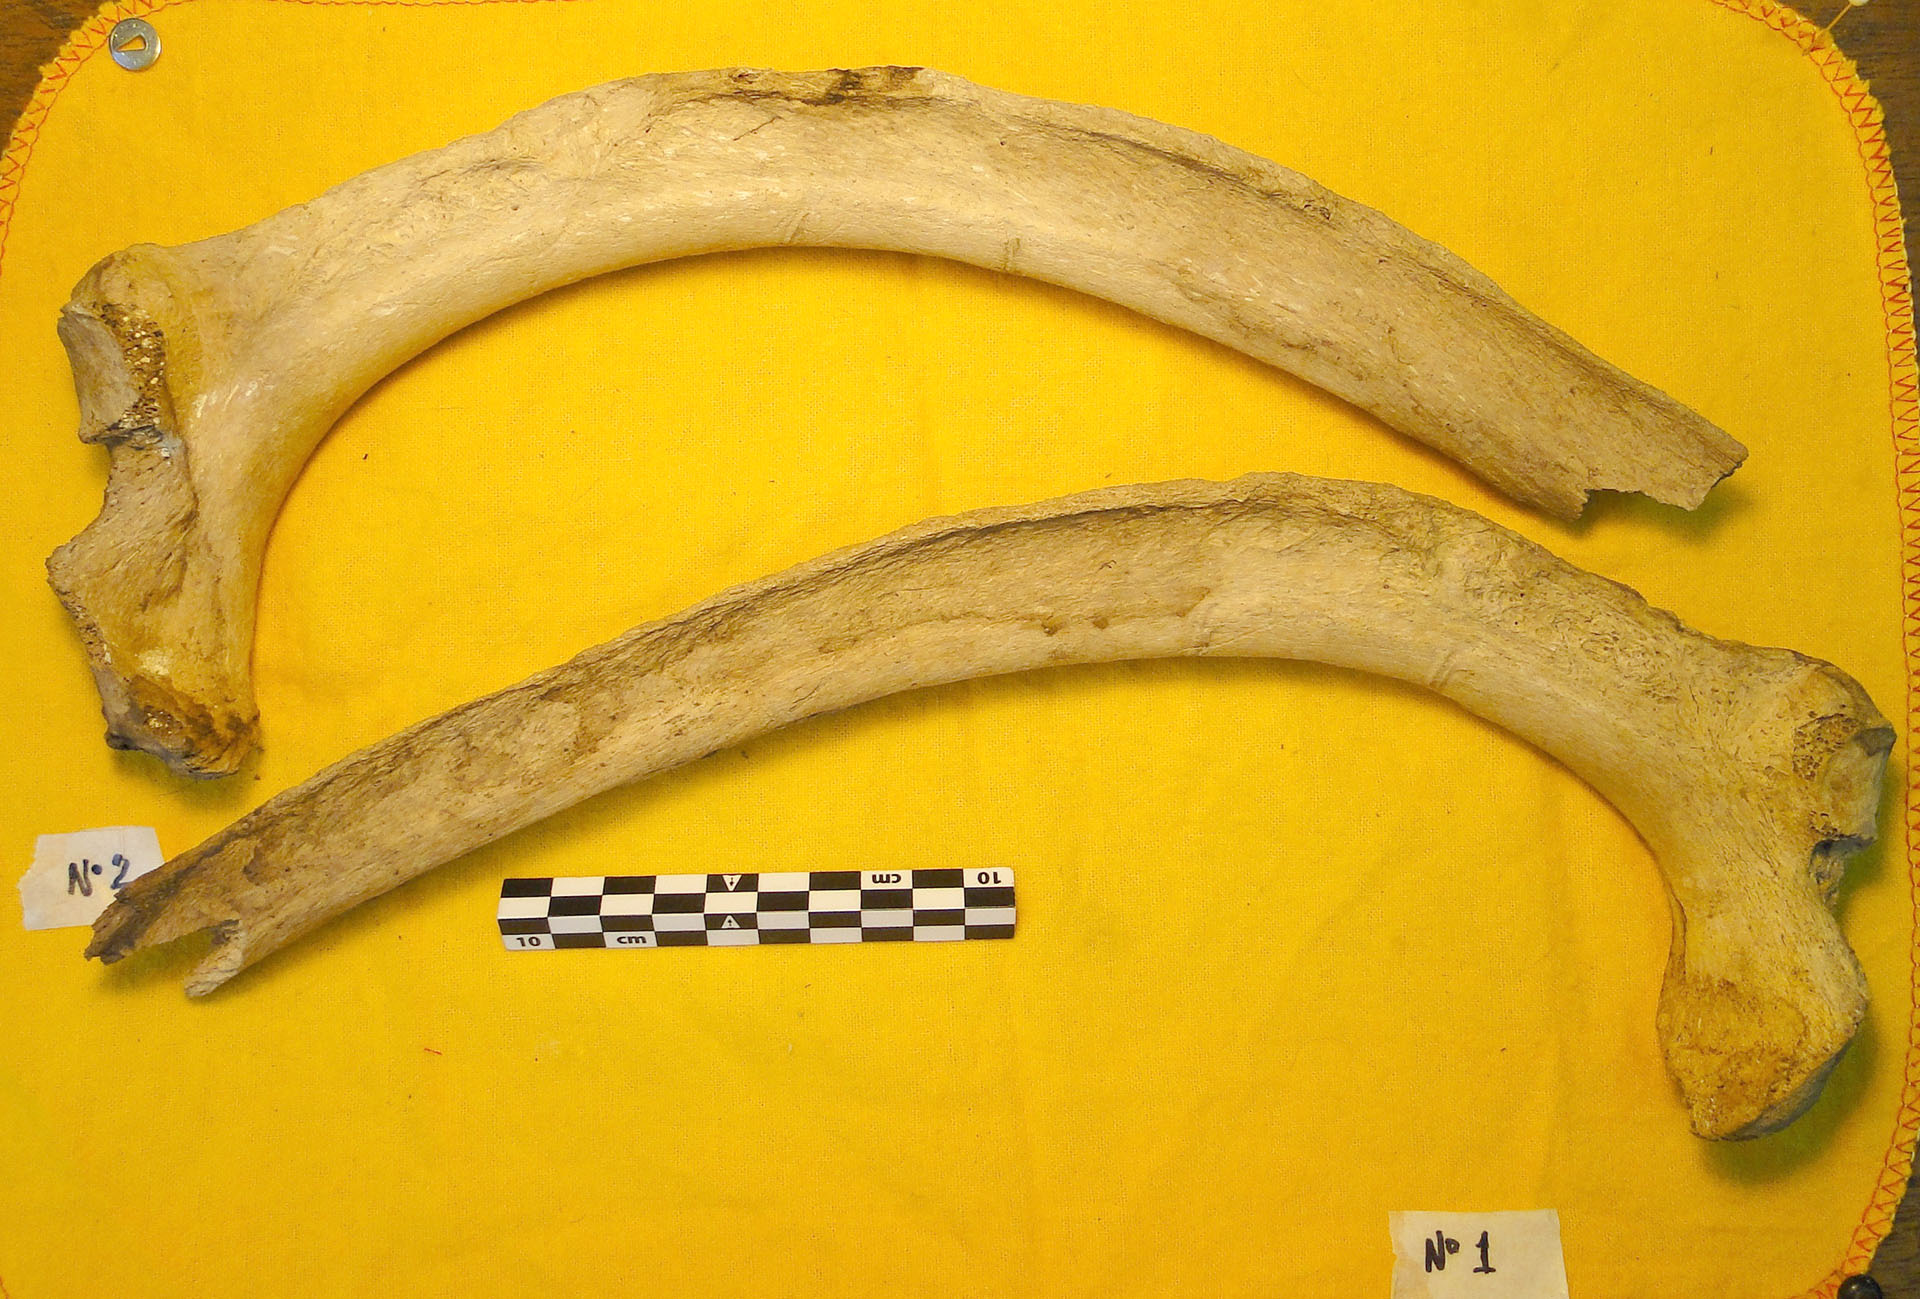 Fotos de las costillas de Scelidotherium con marcas (datadas en ca.39.000 años AP) AP: antes del presente.